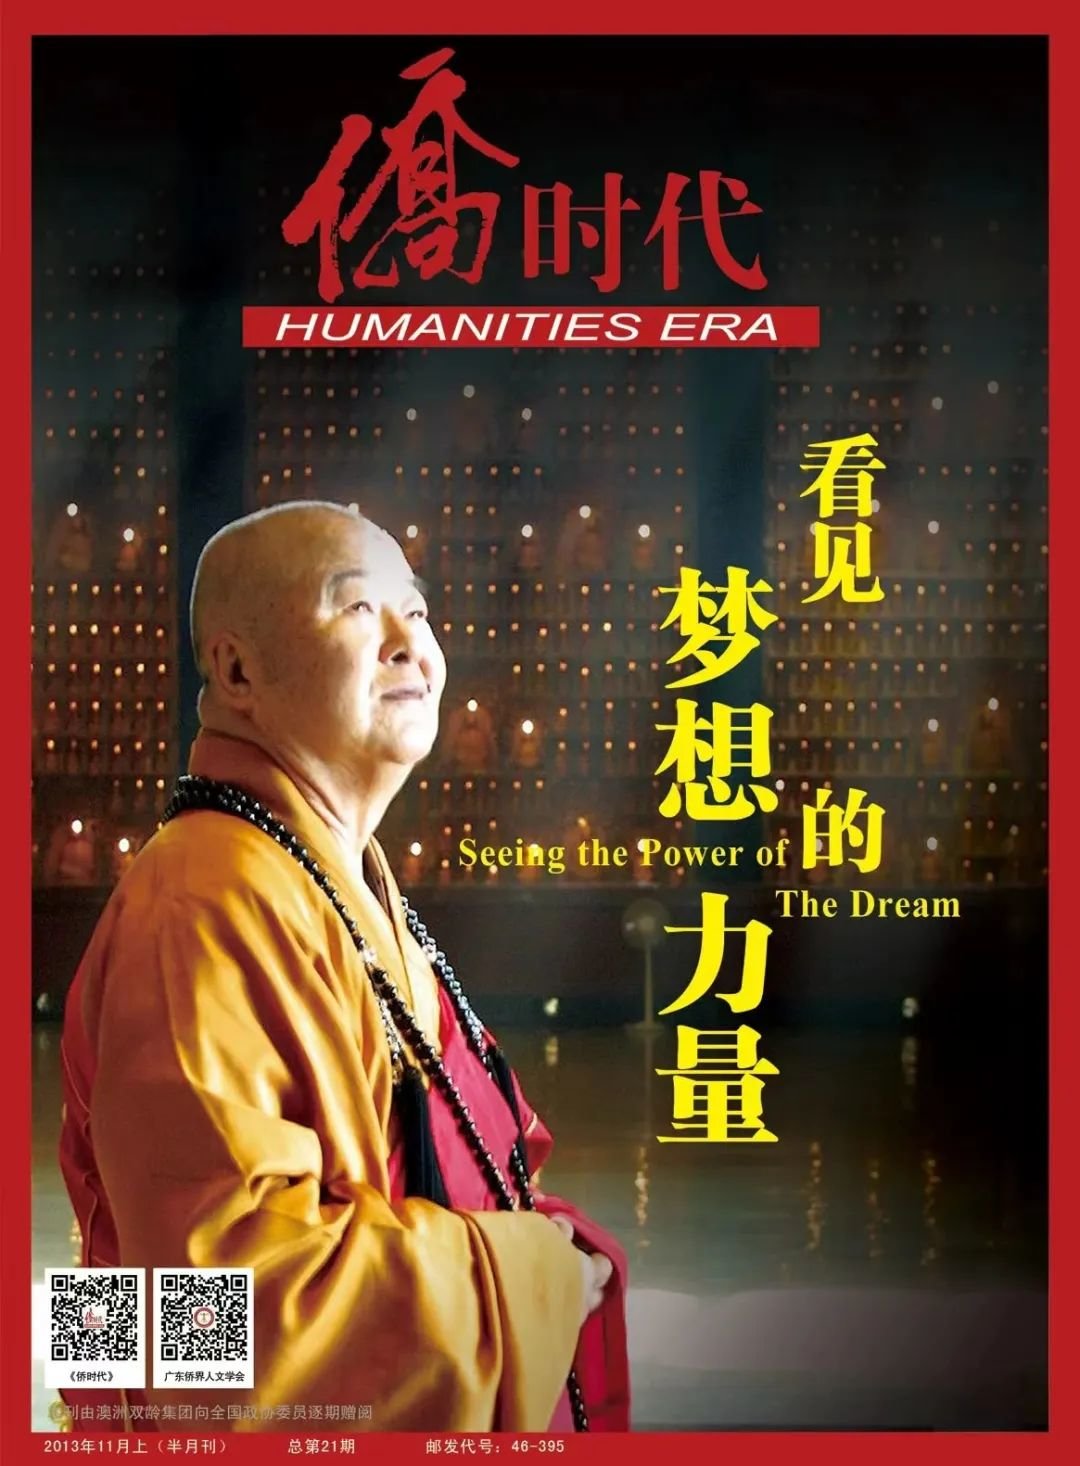 2013年，星云大师应广东侨界人文学会邀请来广东，在中山纪念堂开讲“看见梦想的力量”